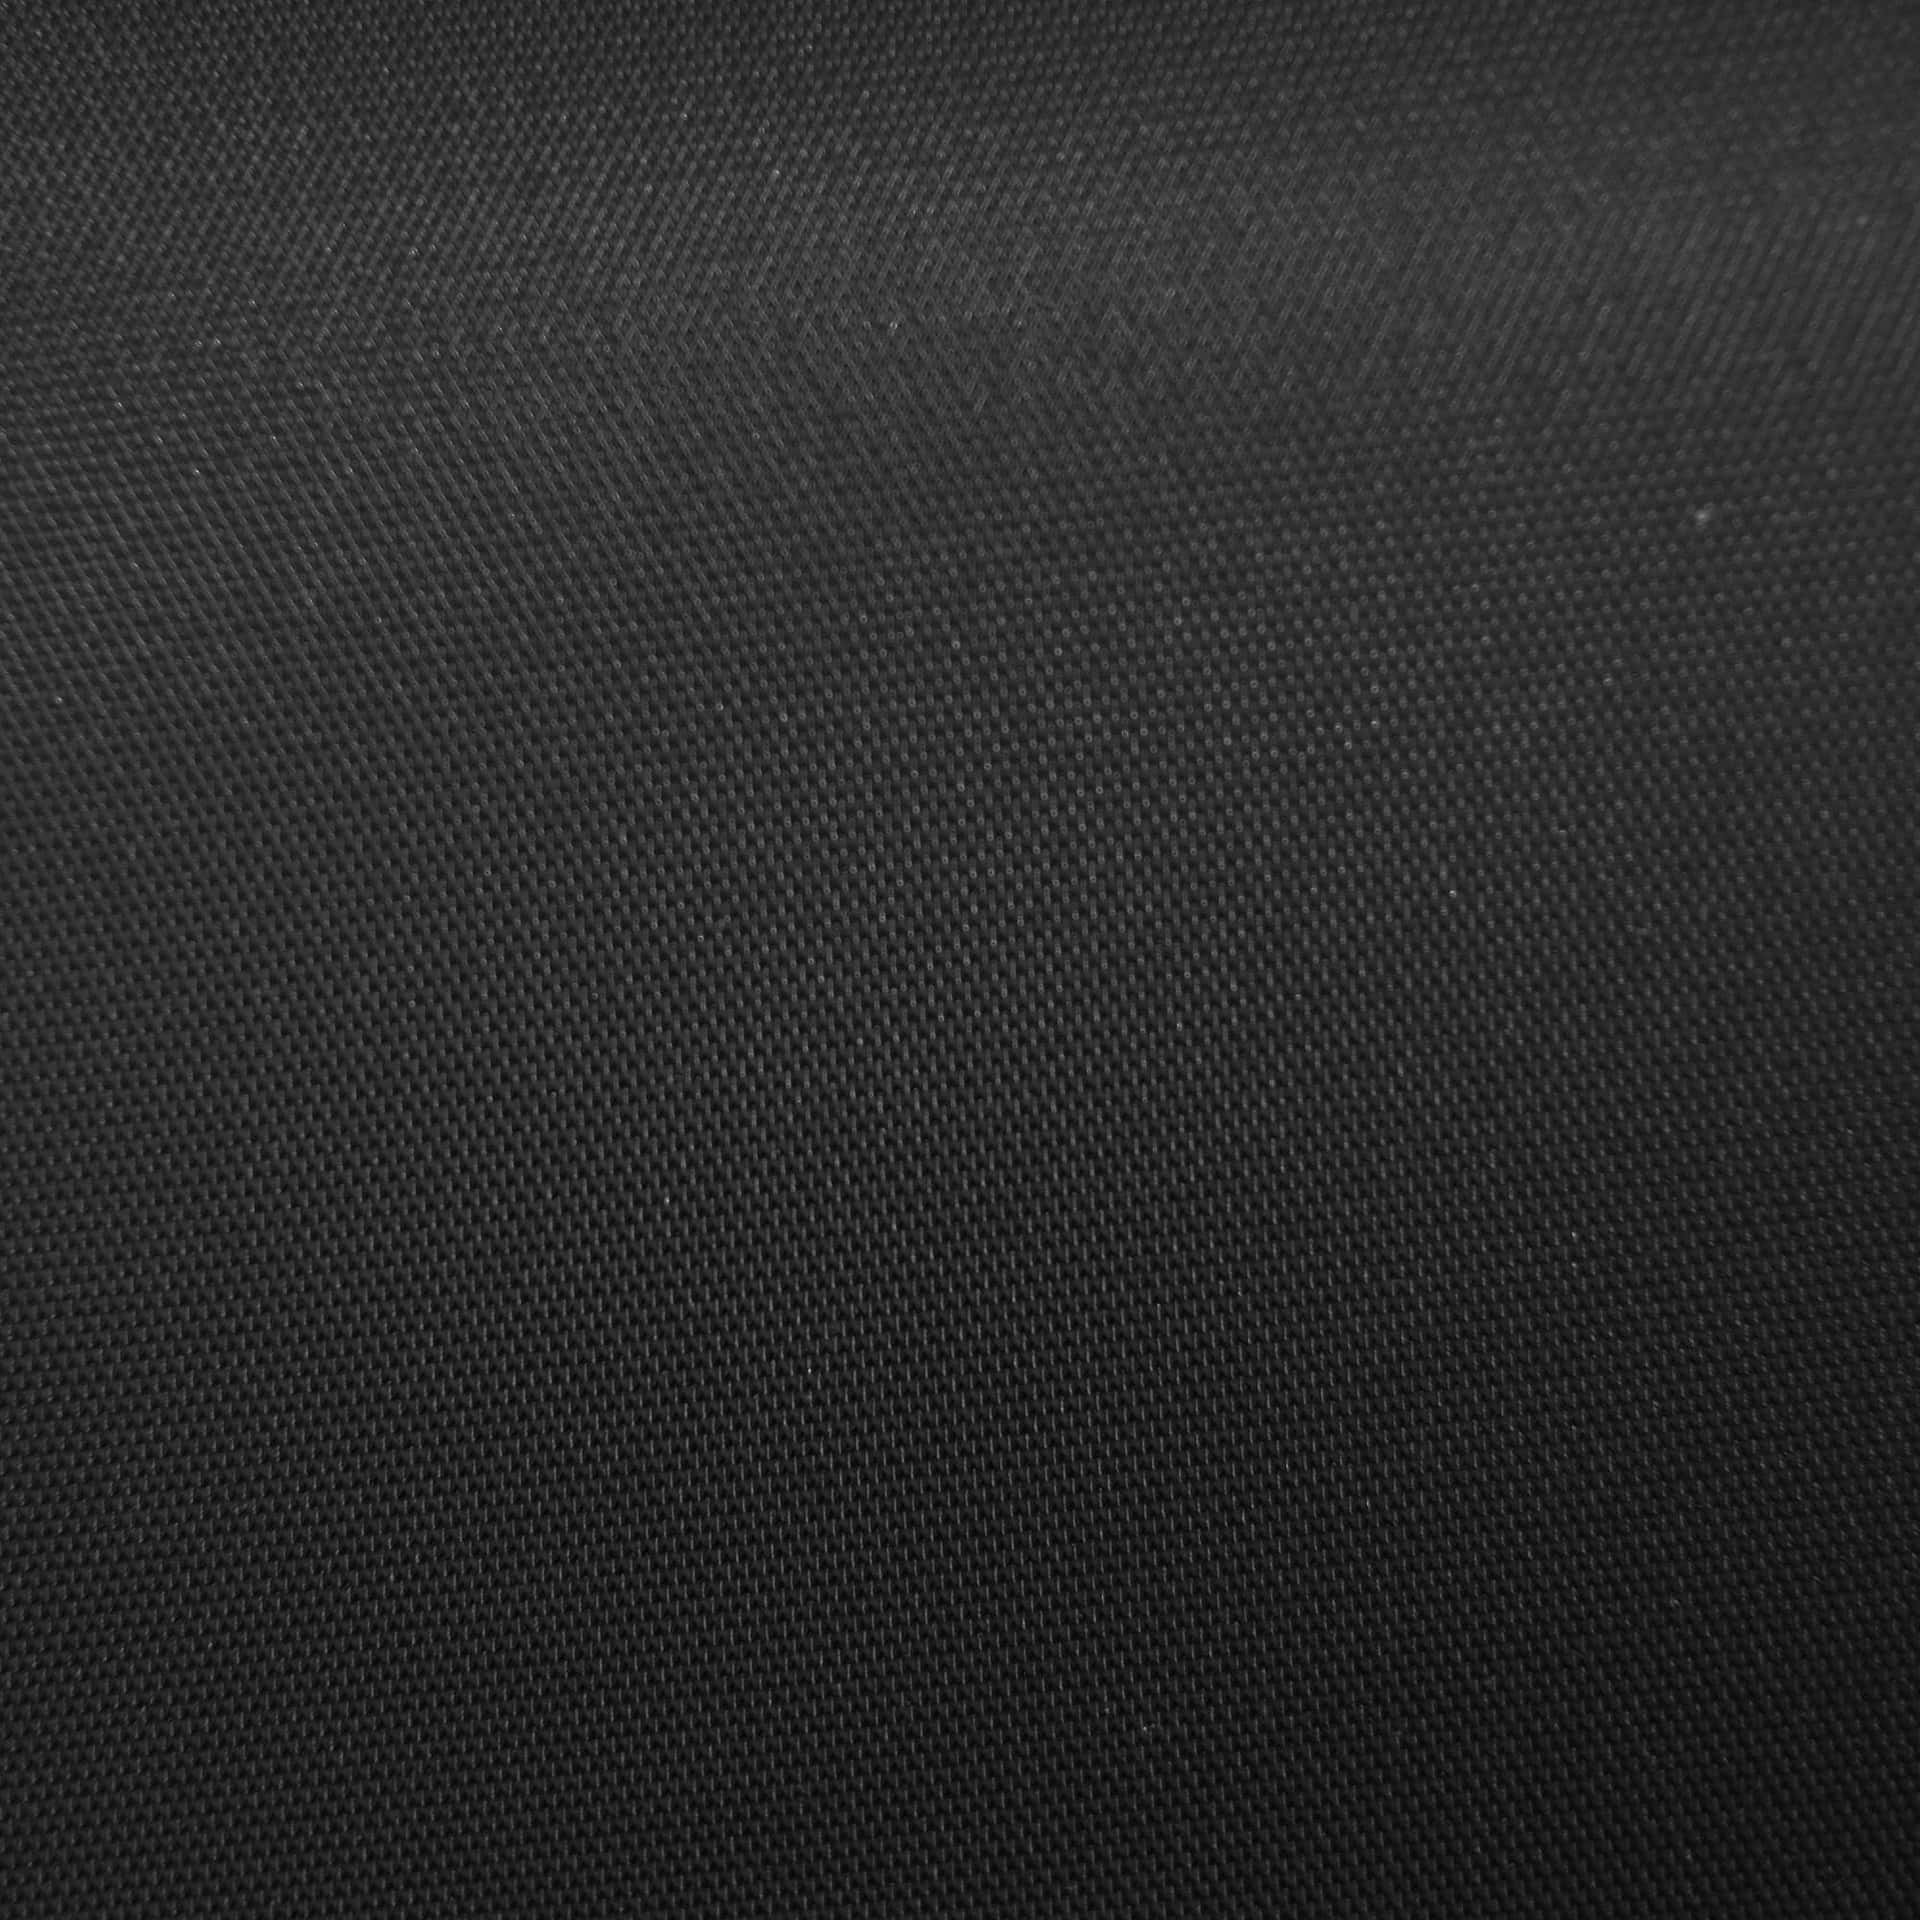 Diseñometálico Negro De Lujo Fondo de pantalla